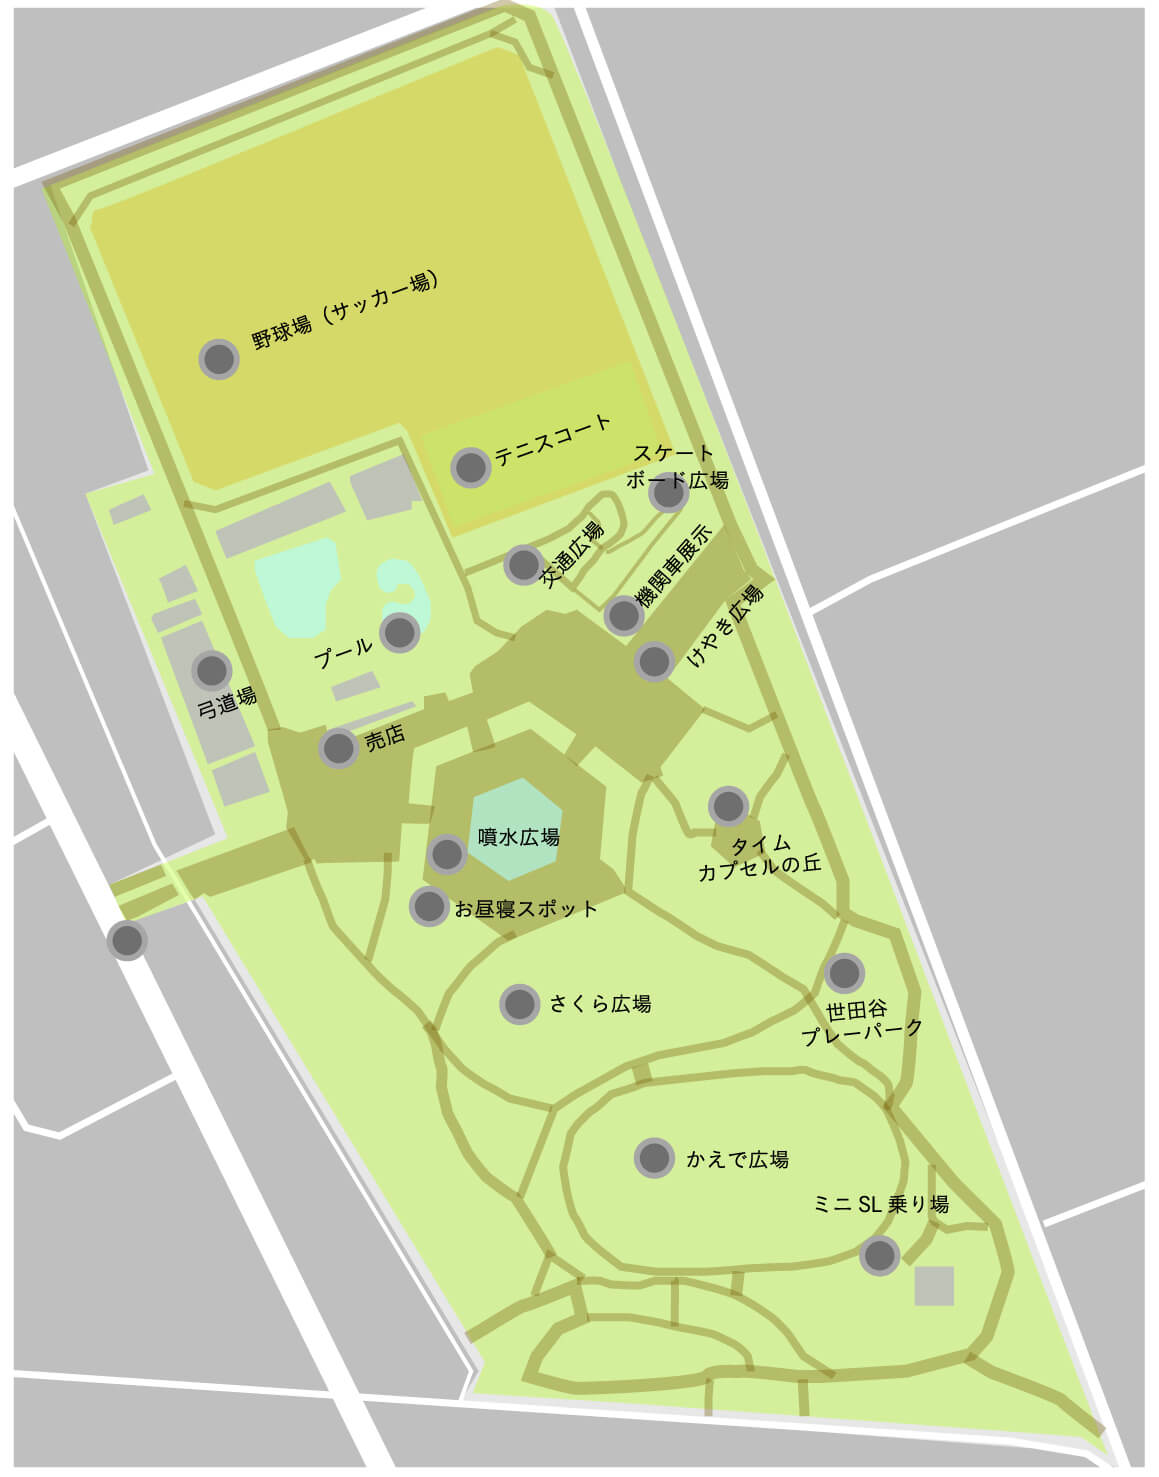 この画像は世田谷公園の各施設が記載された園内マップです。